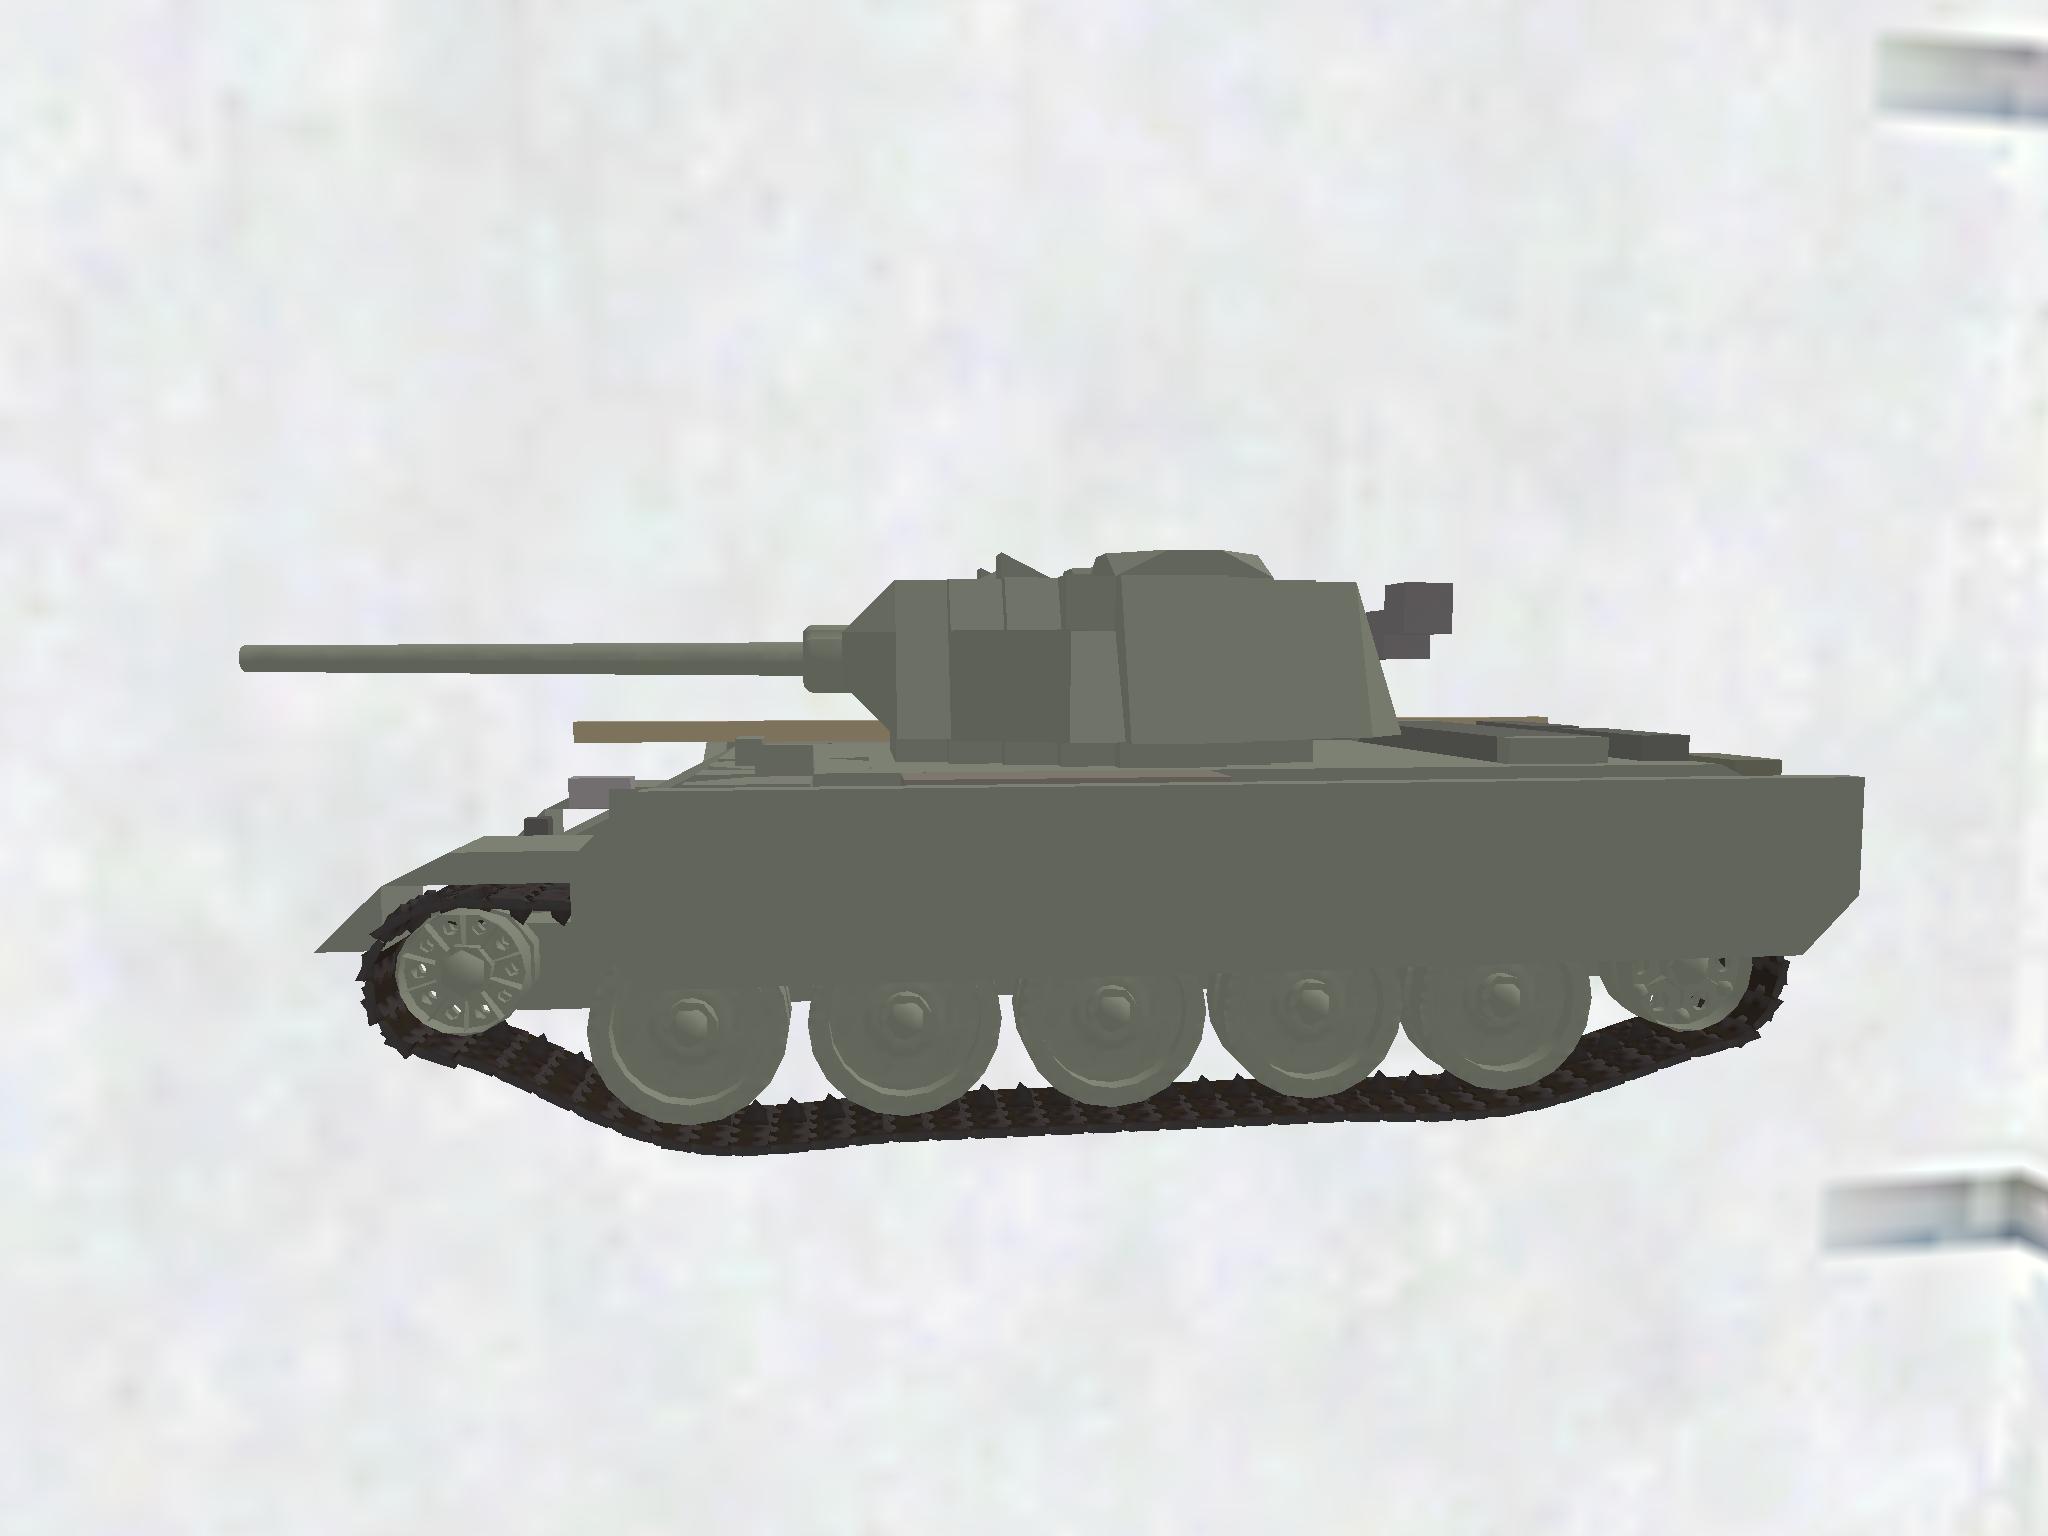 T-44-100